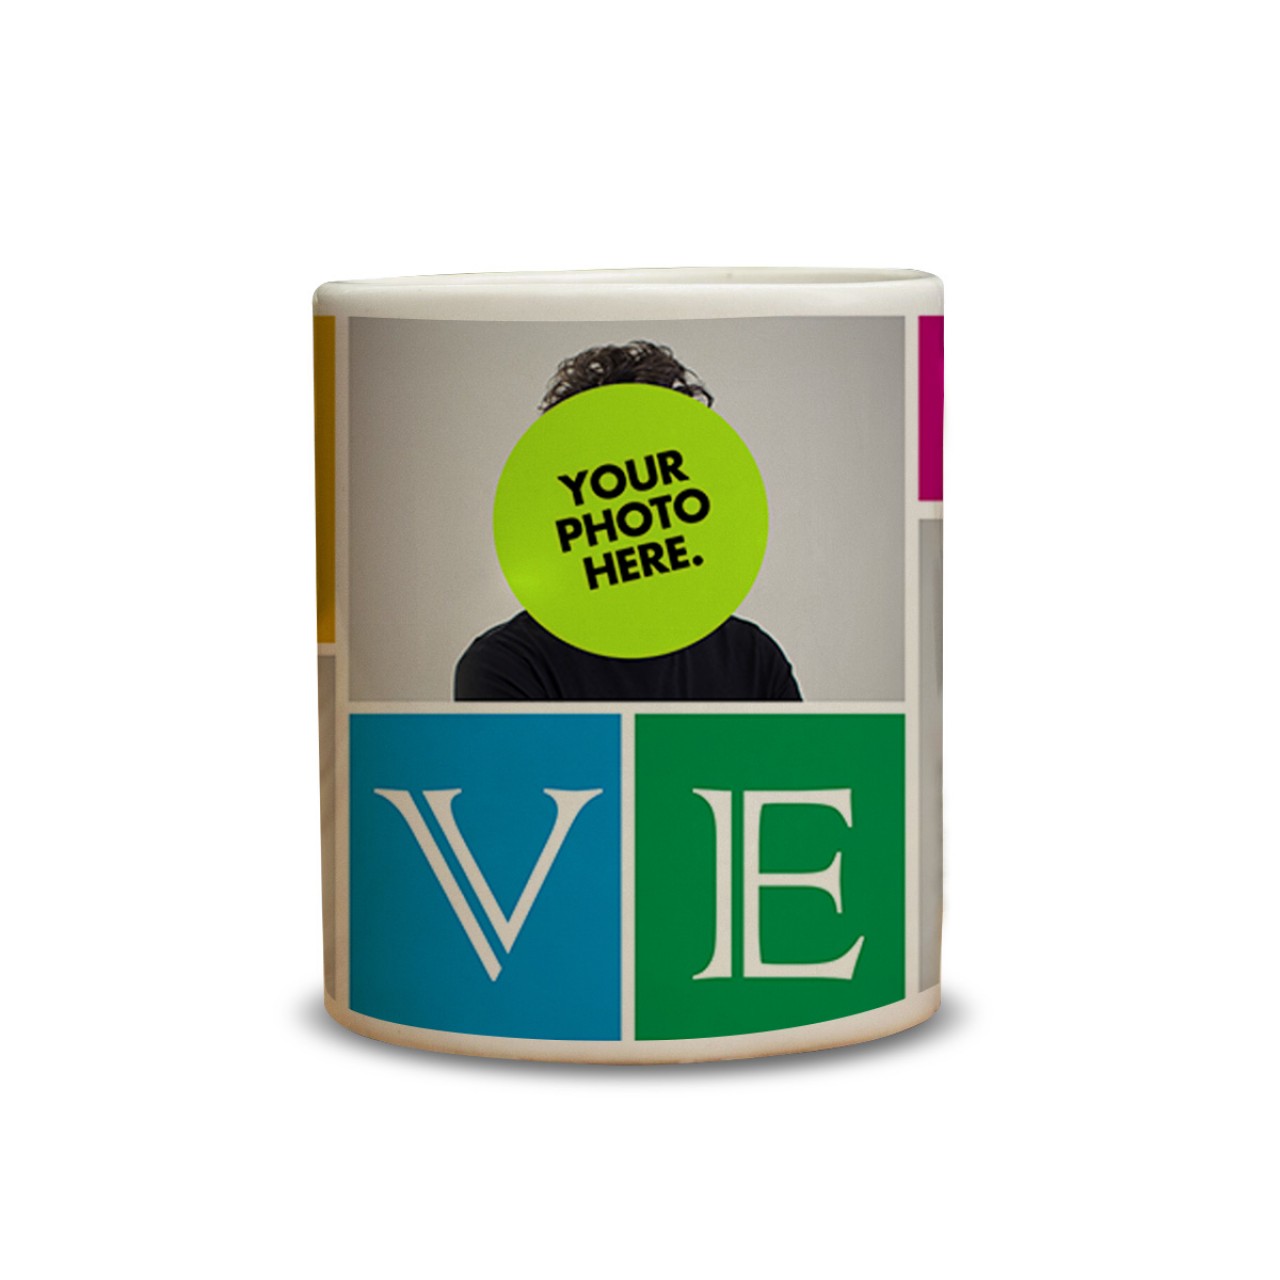 Personalised love message mug